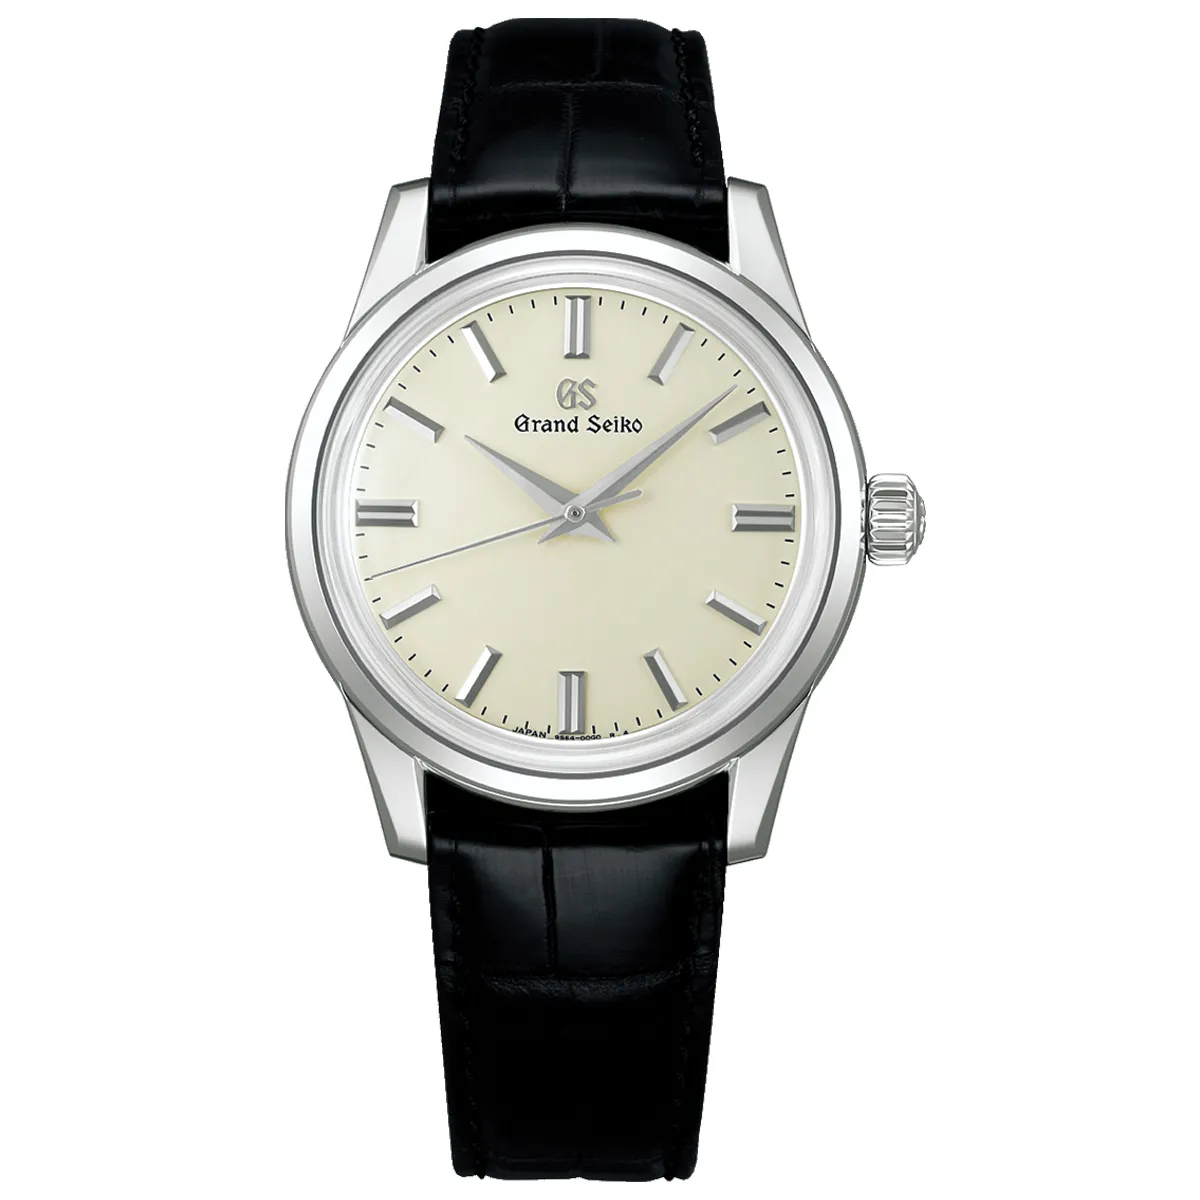 Đồng hồ Grand Seiko Elegance Collection SBGW301 mặt số màu trắng. Dây đeo bằng da. Thân vỏ bằng thép.